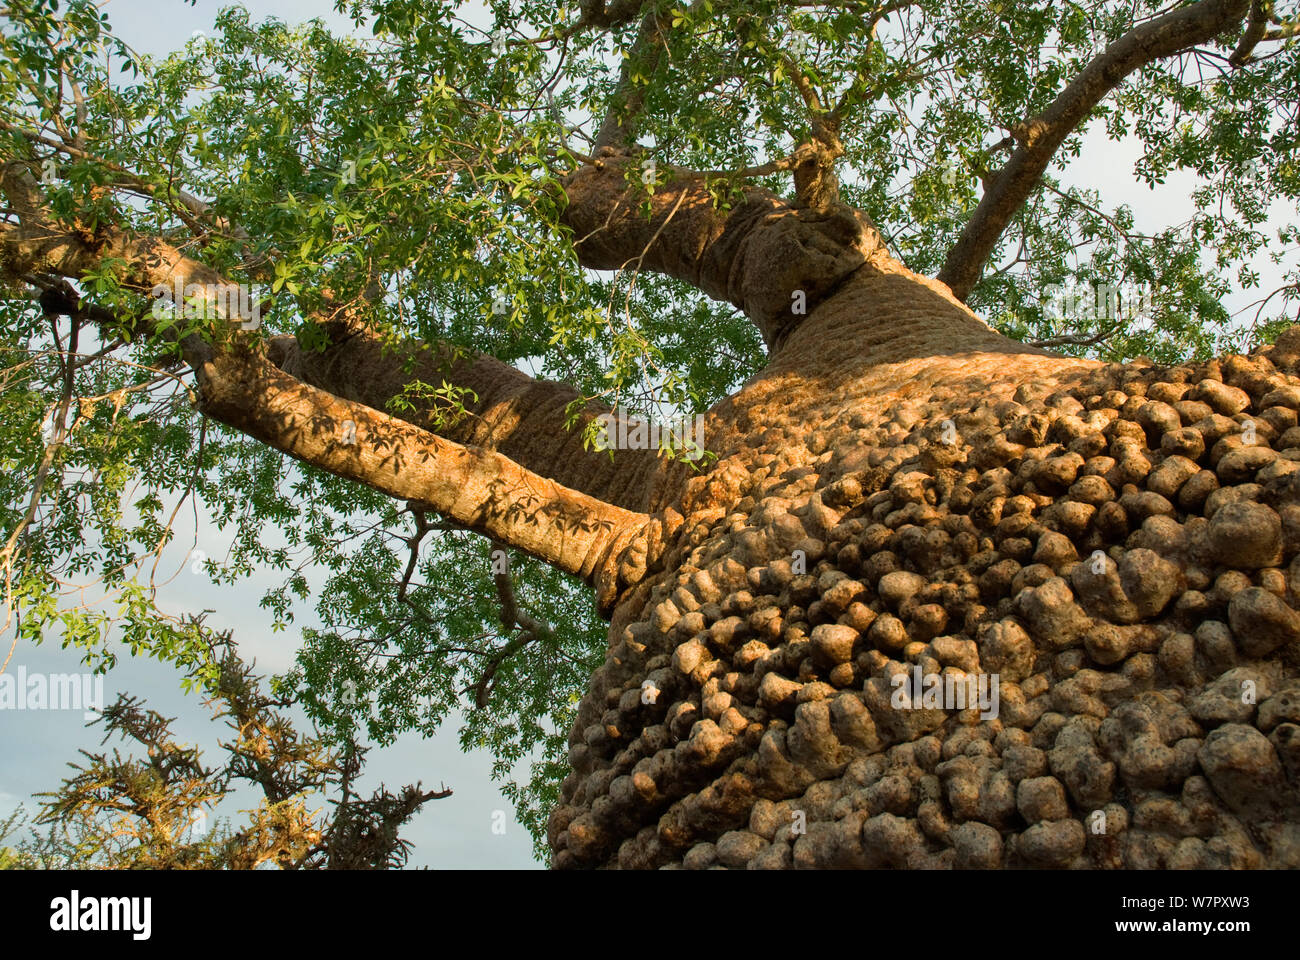 Baobab (Adansonia rubrostipa) montrant le feuillage vert pendant la saison des pluies. Lac Tsimanampetsotsa, Madagascar. Photographie prise sur l'emplacement pour BBC 'Wild Madagascar' Série, Février 2010 Banque D'Images